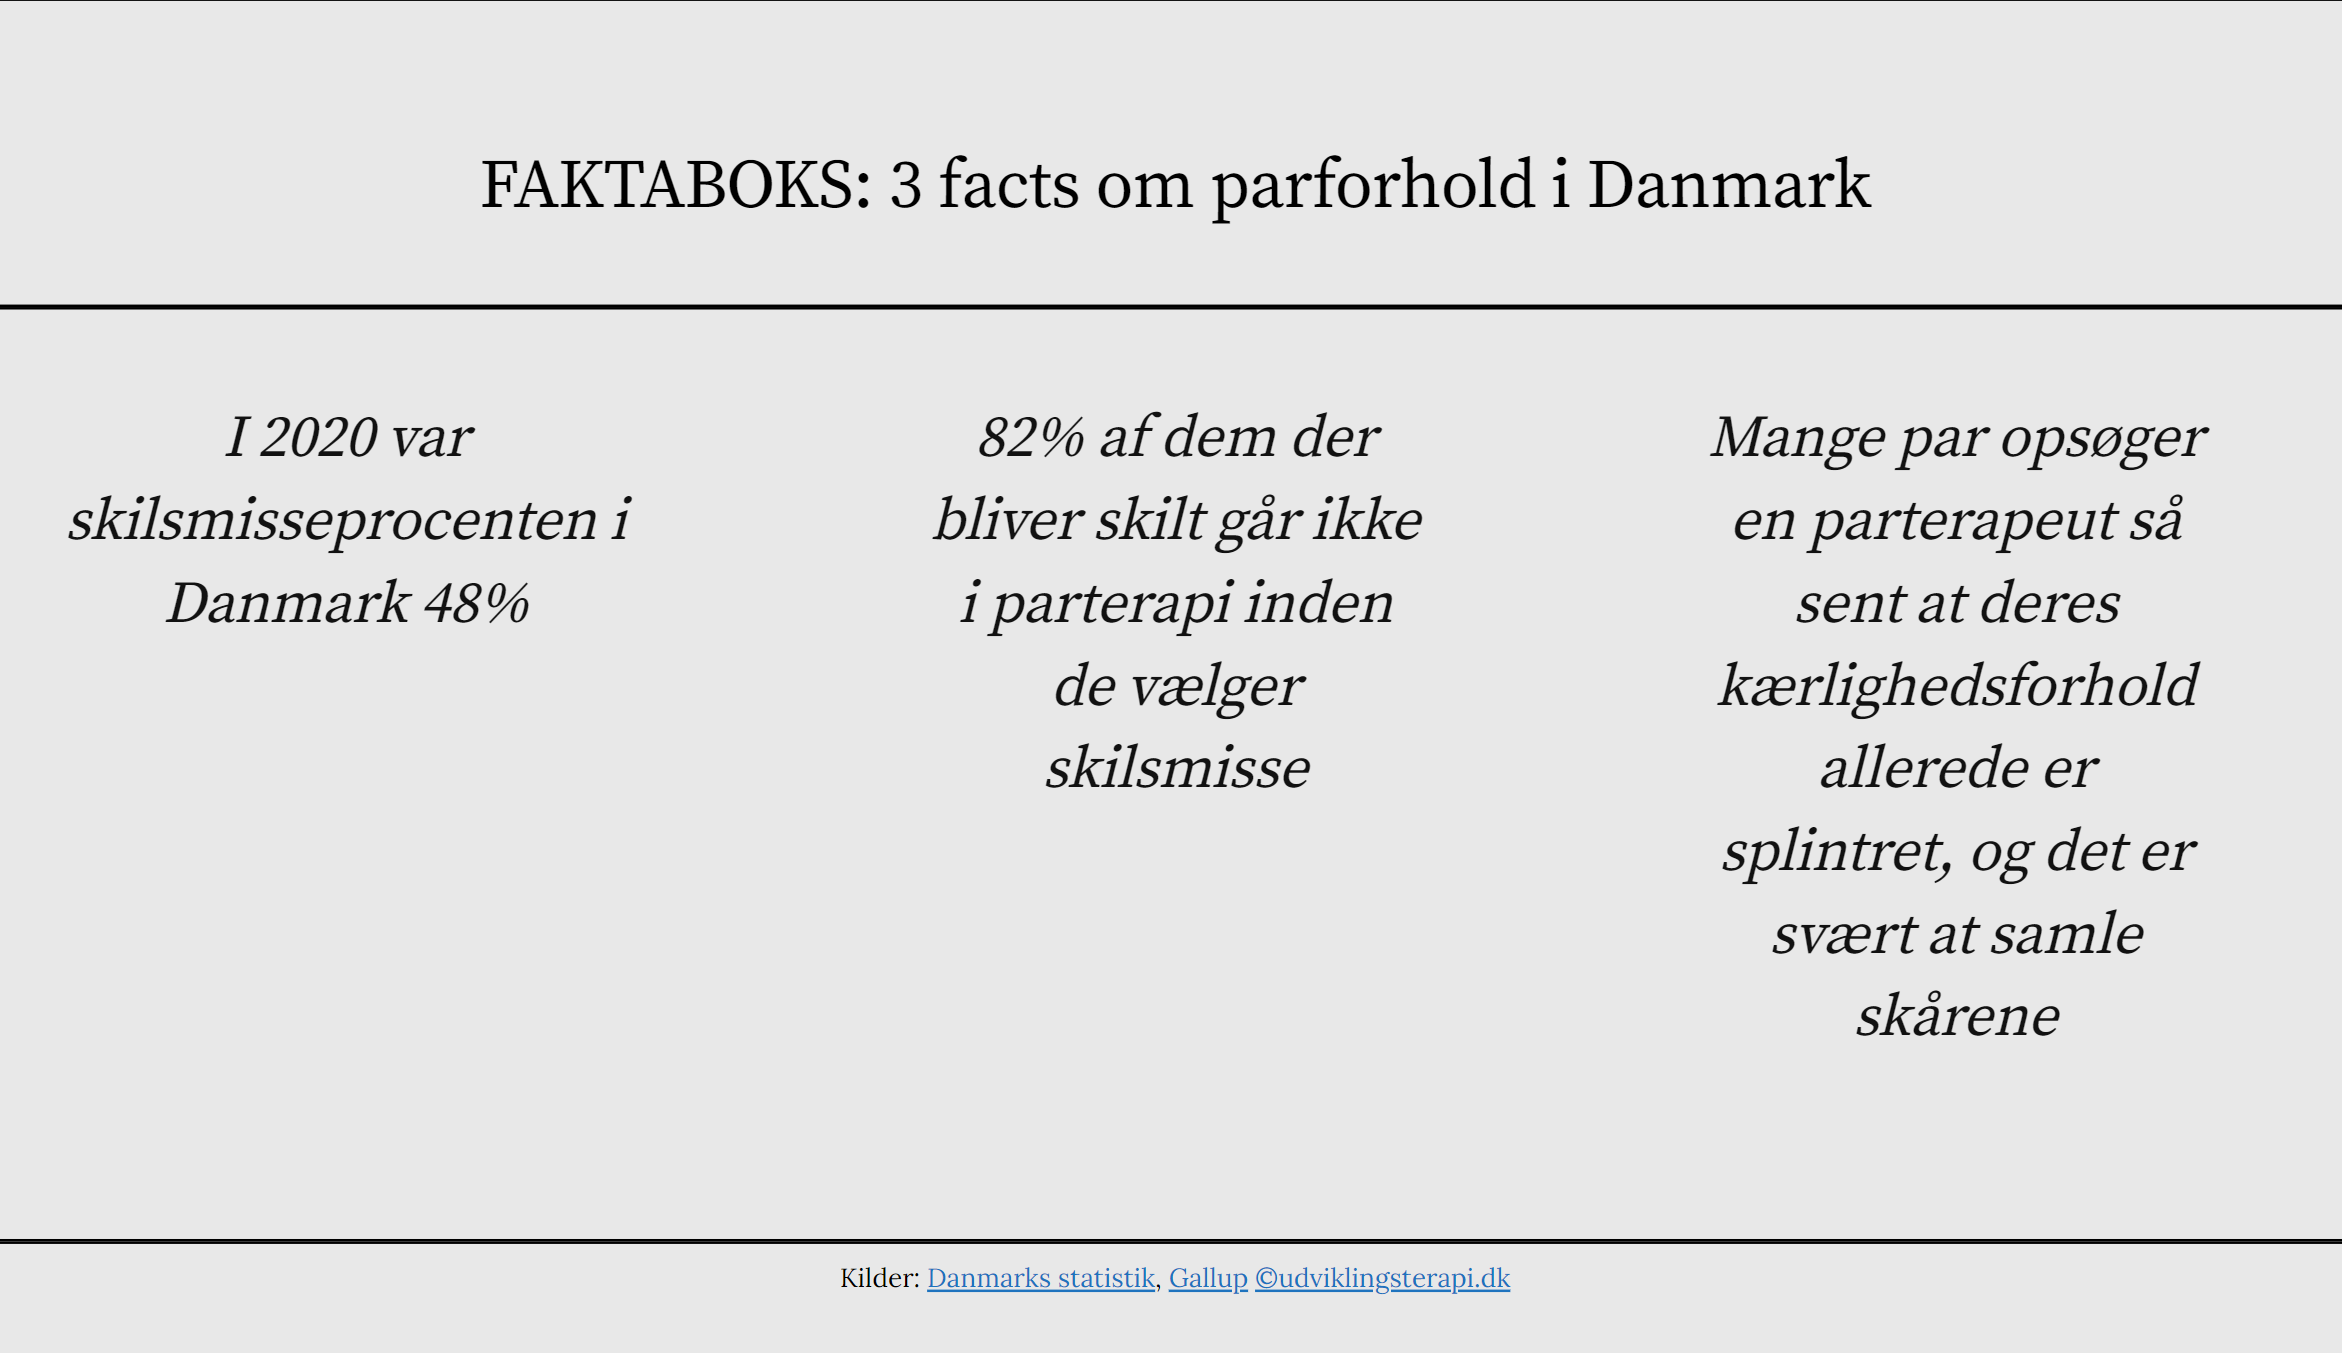 Faktaboks om parforhold i Danmark i tal